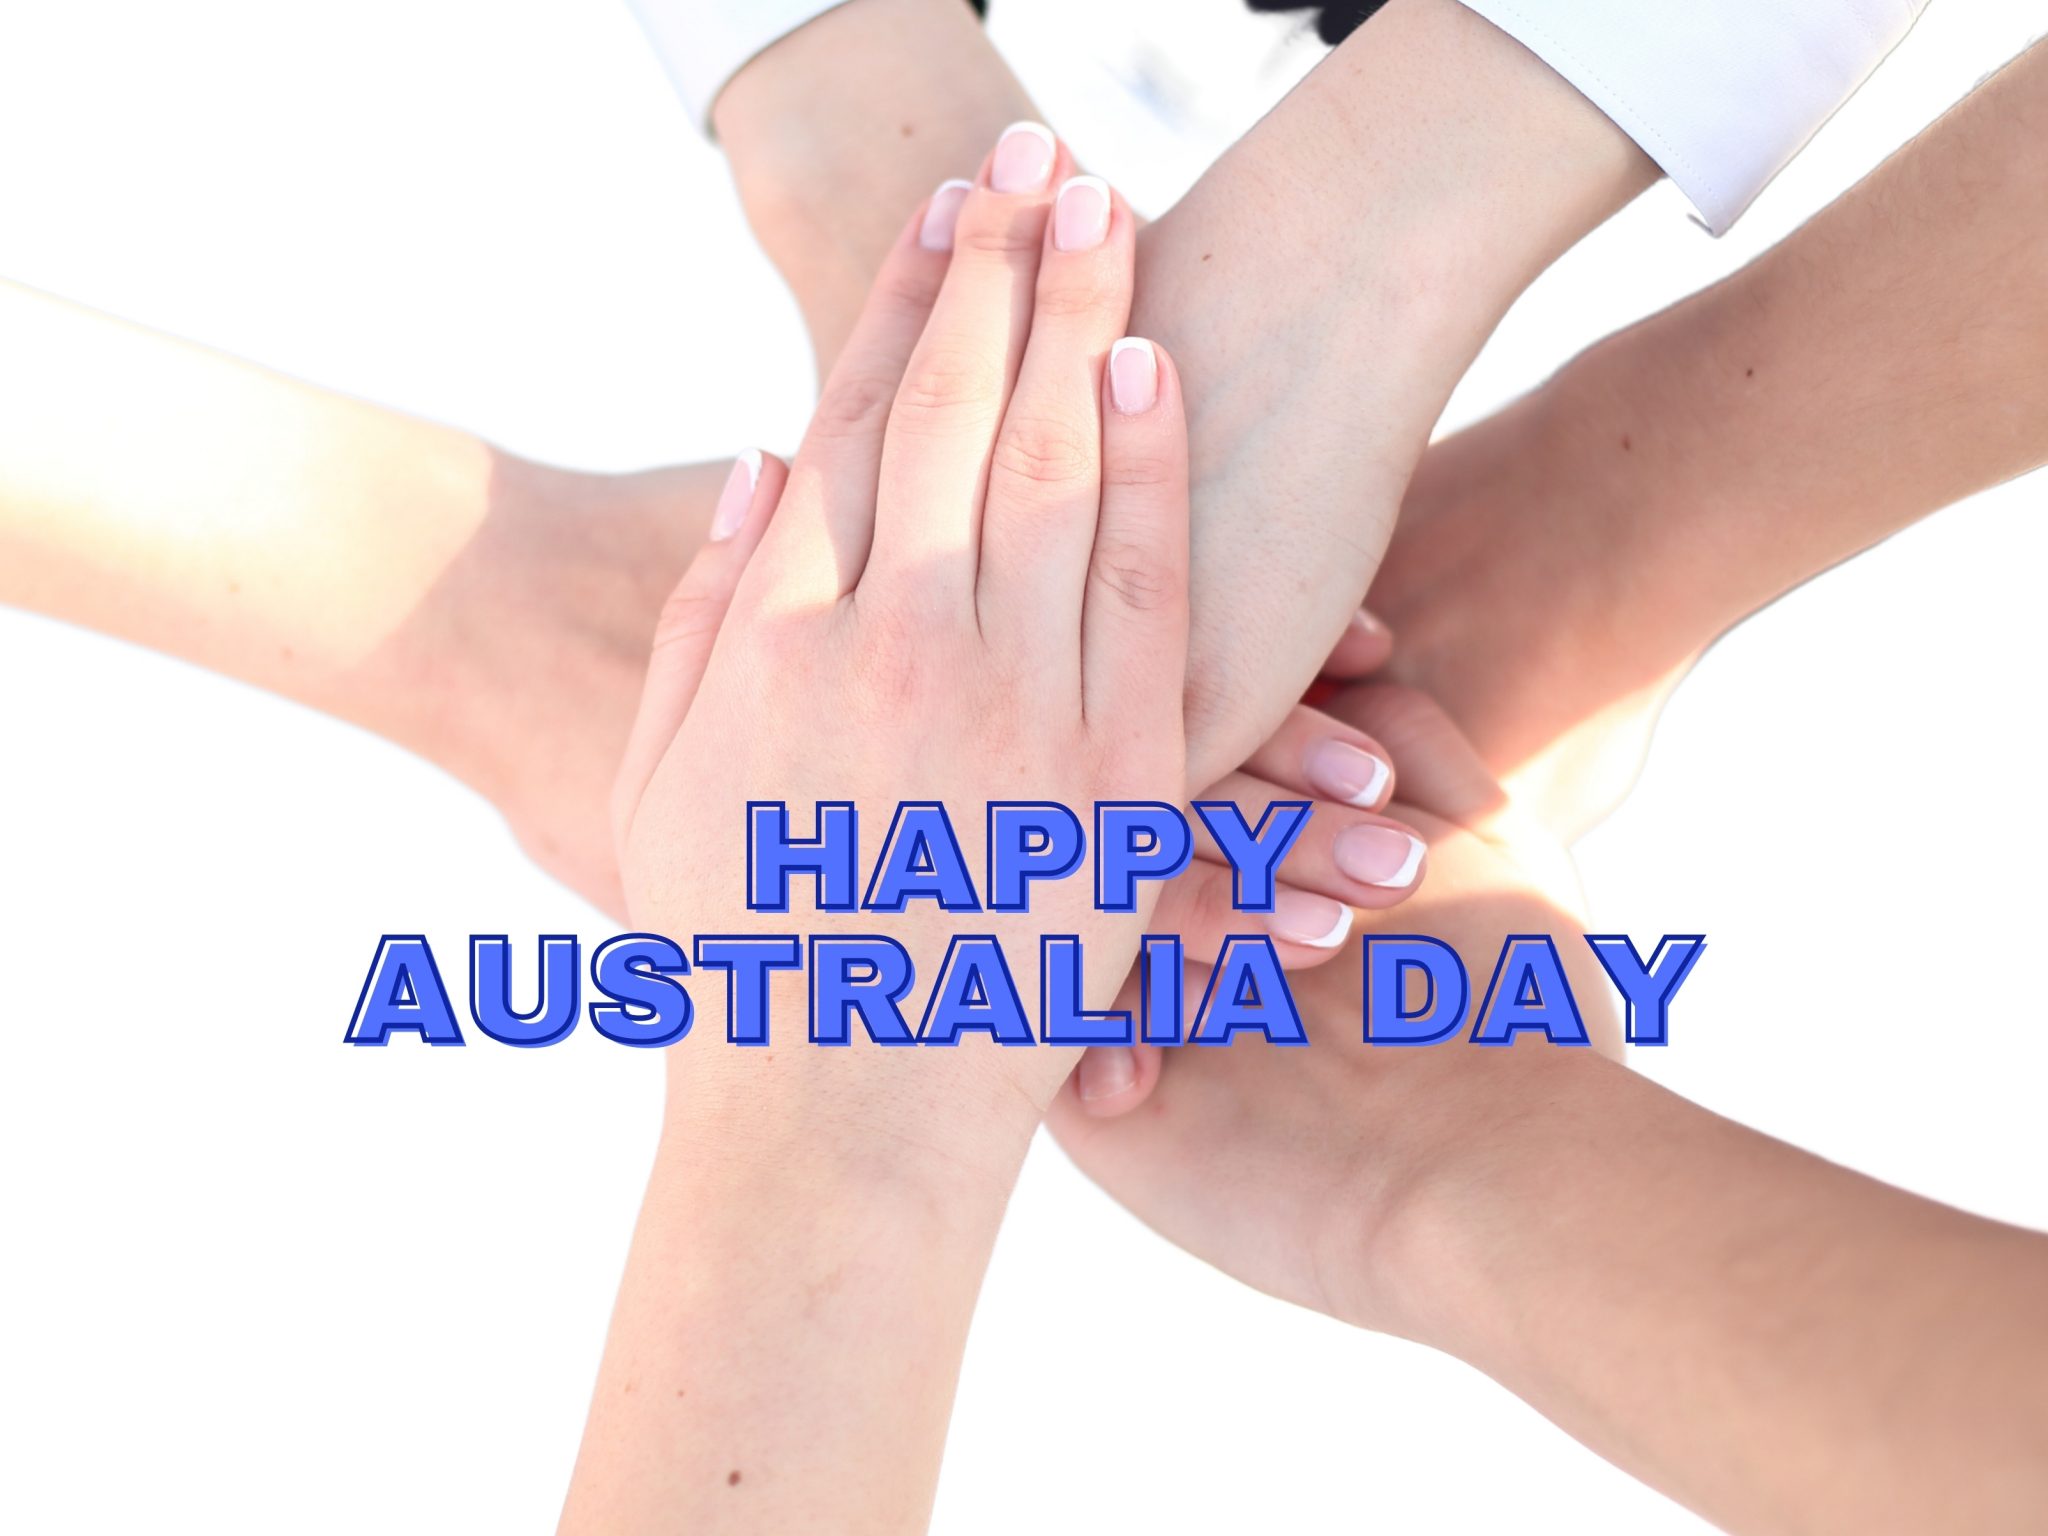 2048x1536 wallpaper Happy Australia Day 26 January 2021 iPad Wallpaper 2048x1536 pixels resolution